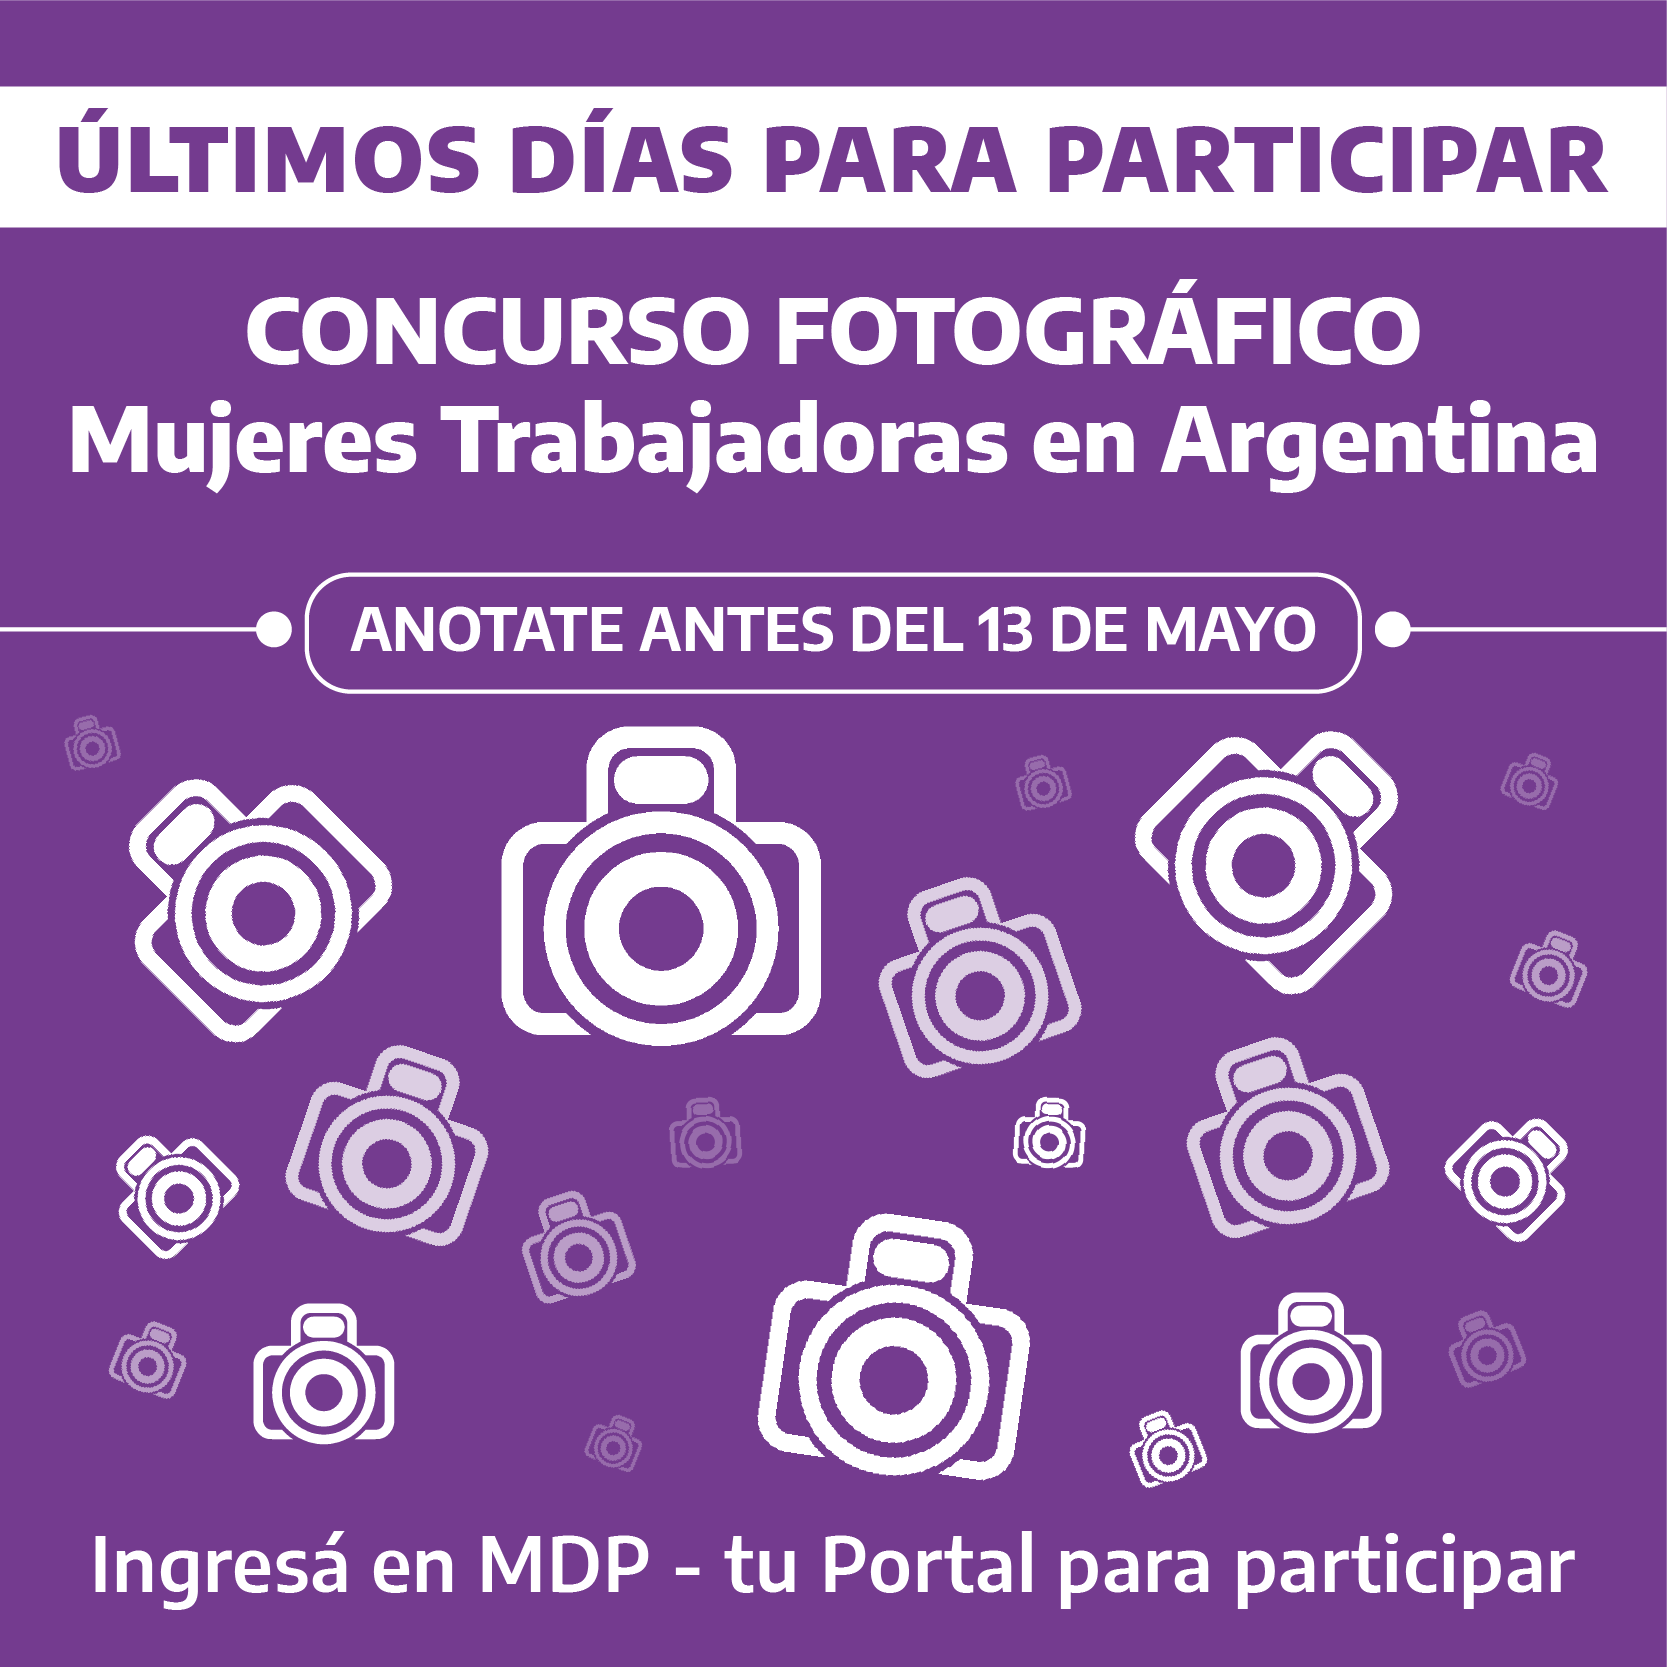 Flyer de difusión del concurso fotográfico